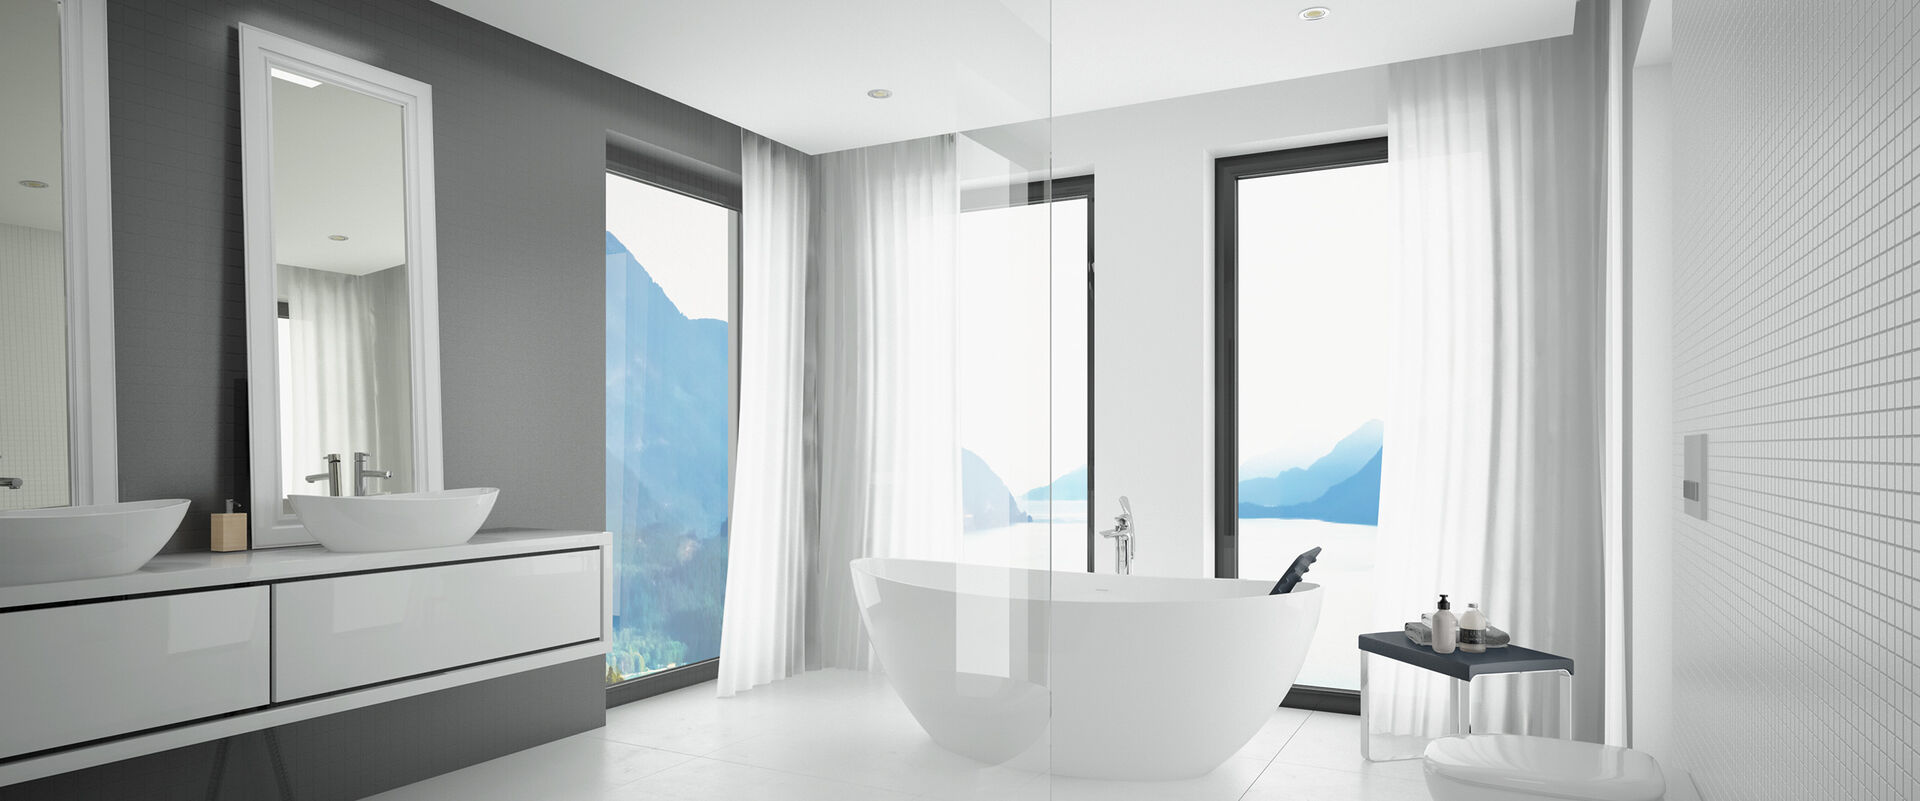 Lichtdurchflutetes Badezimmer in weiß und grau mit Waschbecken-Kombination und Freistehwanne aus der Kollektion Hoesch Namur.